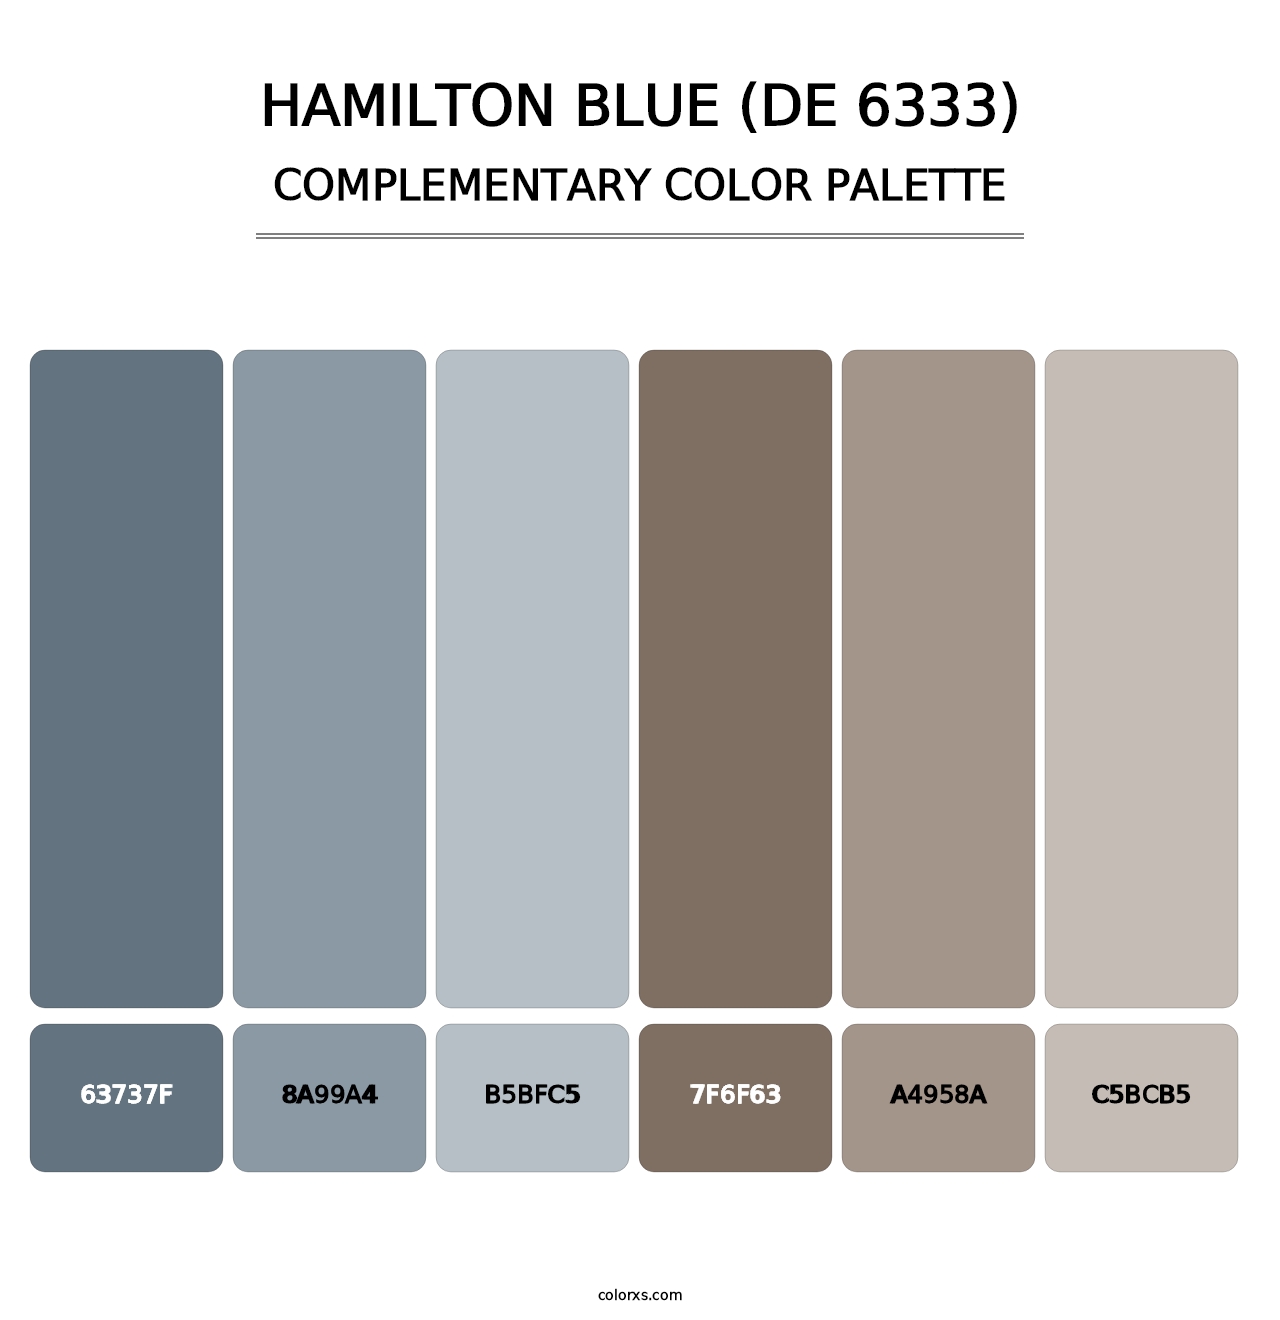 Hamilton Blue (DE 6333) - Complementary Color Palette